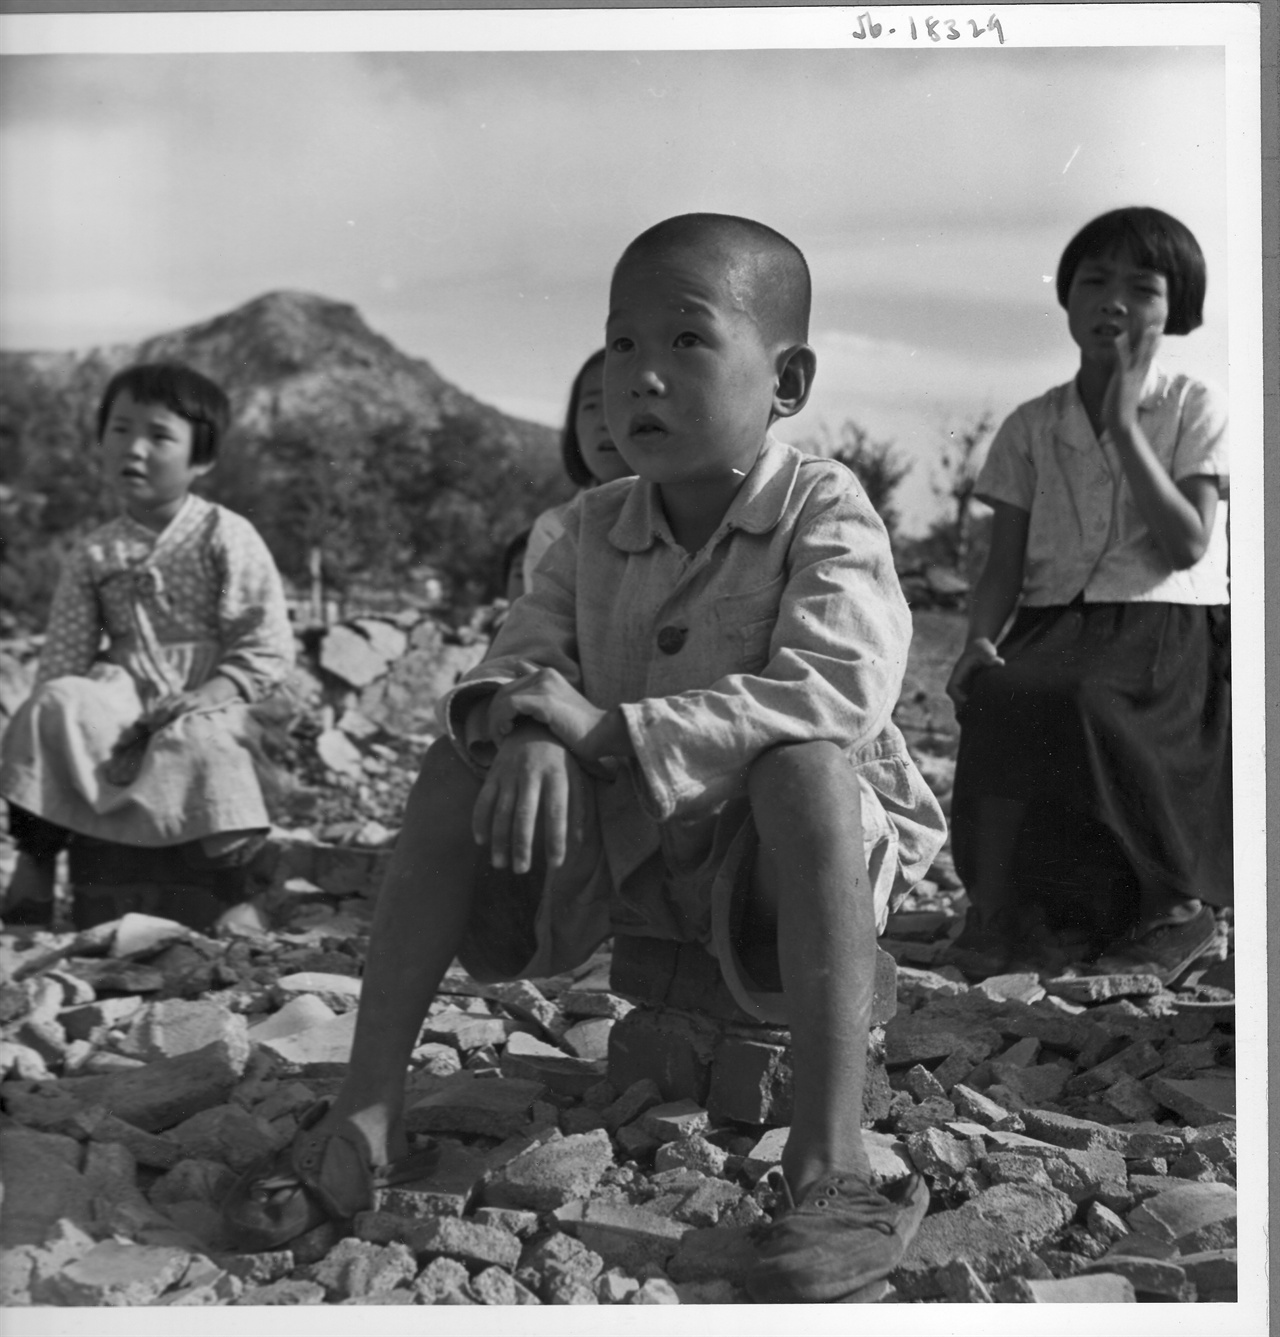  1950. 10. 서울. 은평. 교실이 불타버린 빈 터에서 수업을 받는 어린이들.